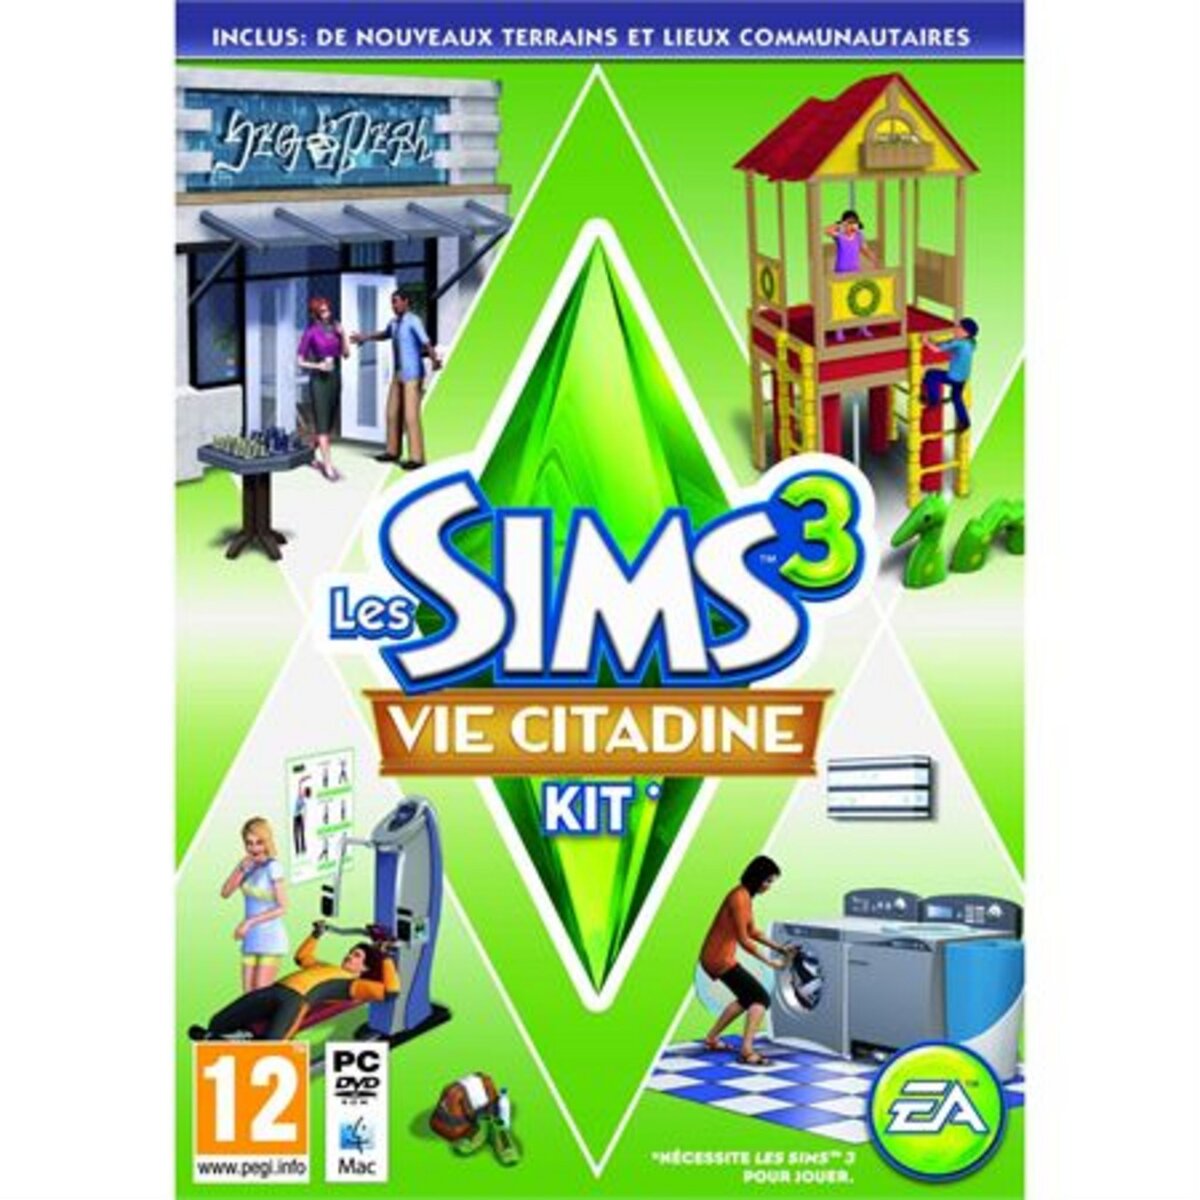 Sims 3 Vie citadine